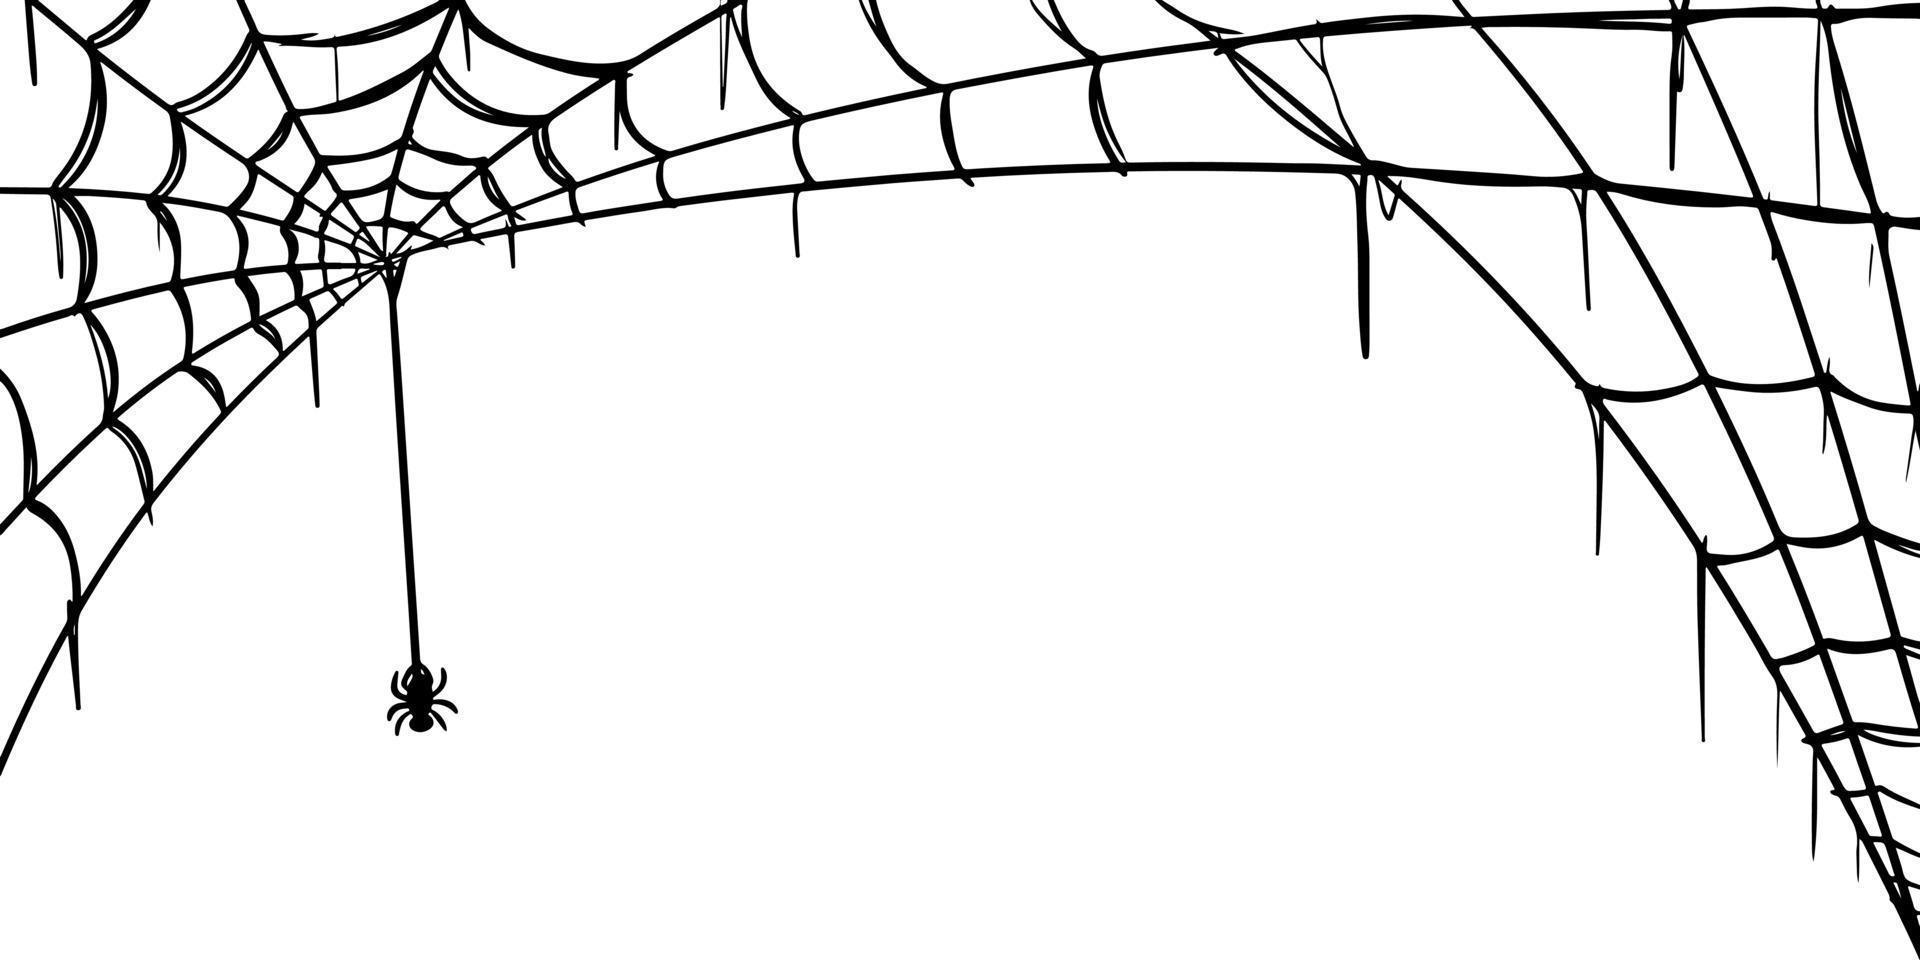 Spider web set isolated on white background. doodle Vector illustration of cobweb.